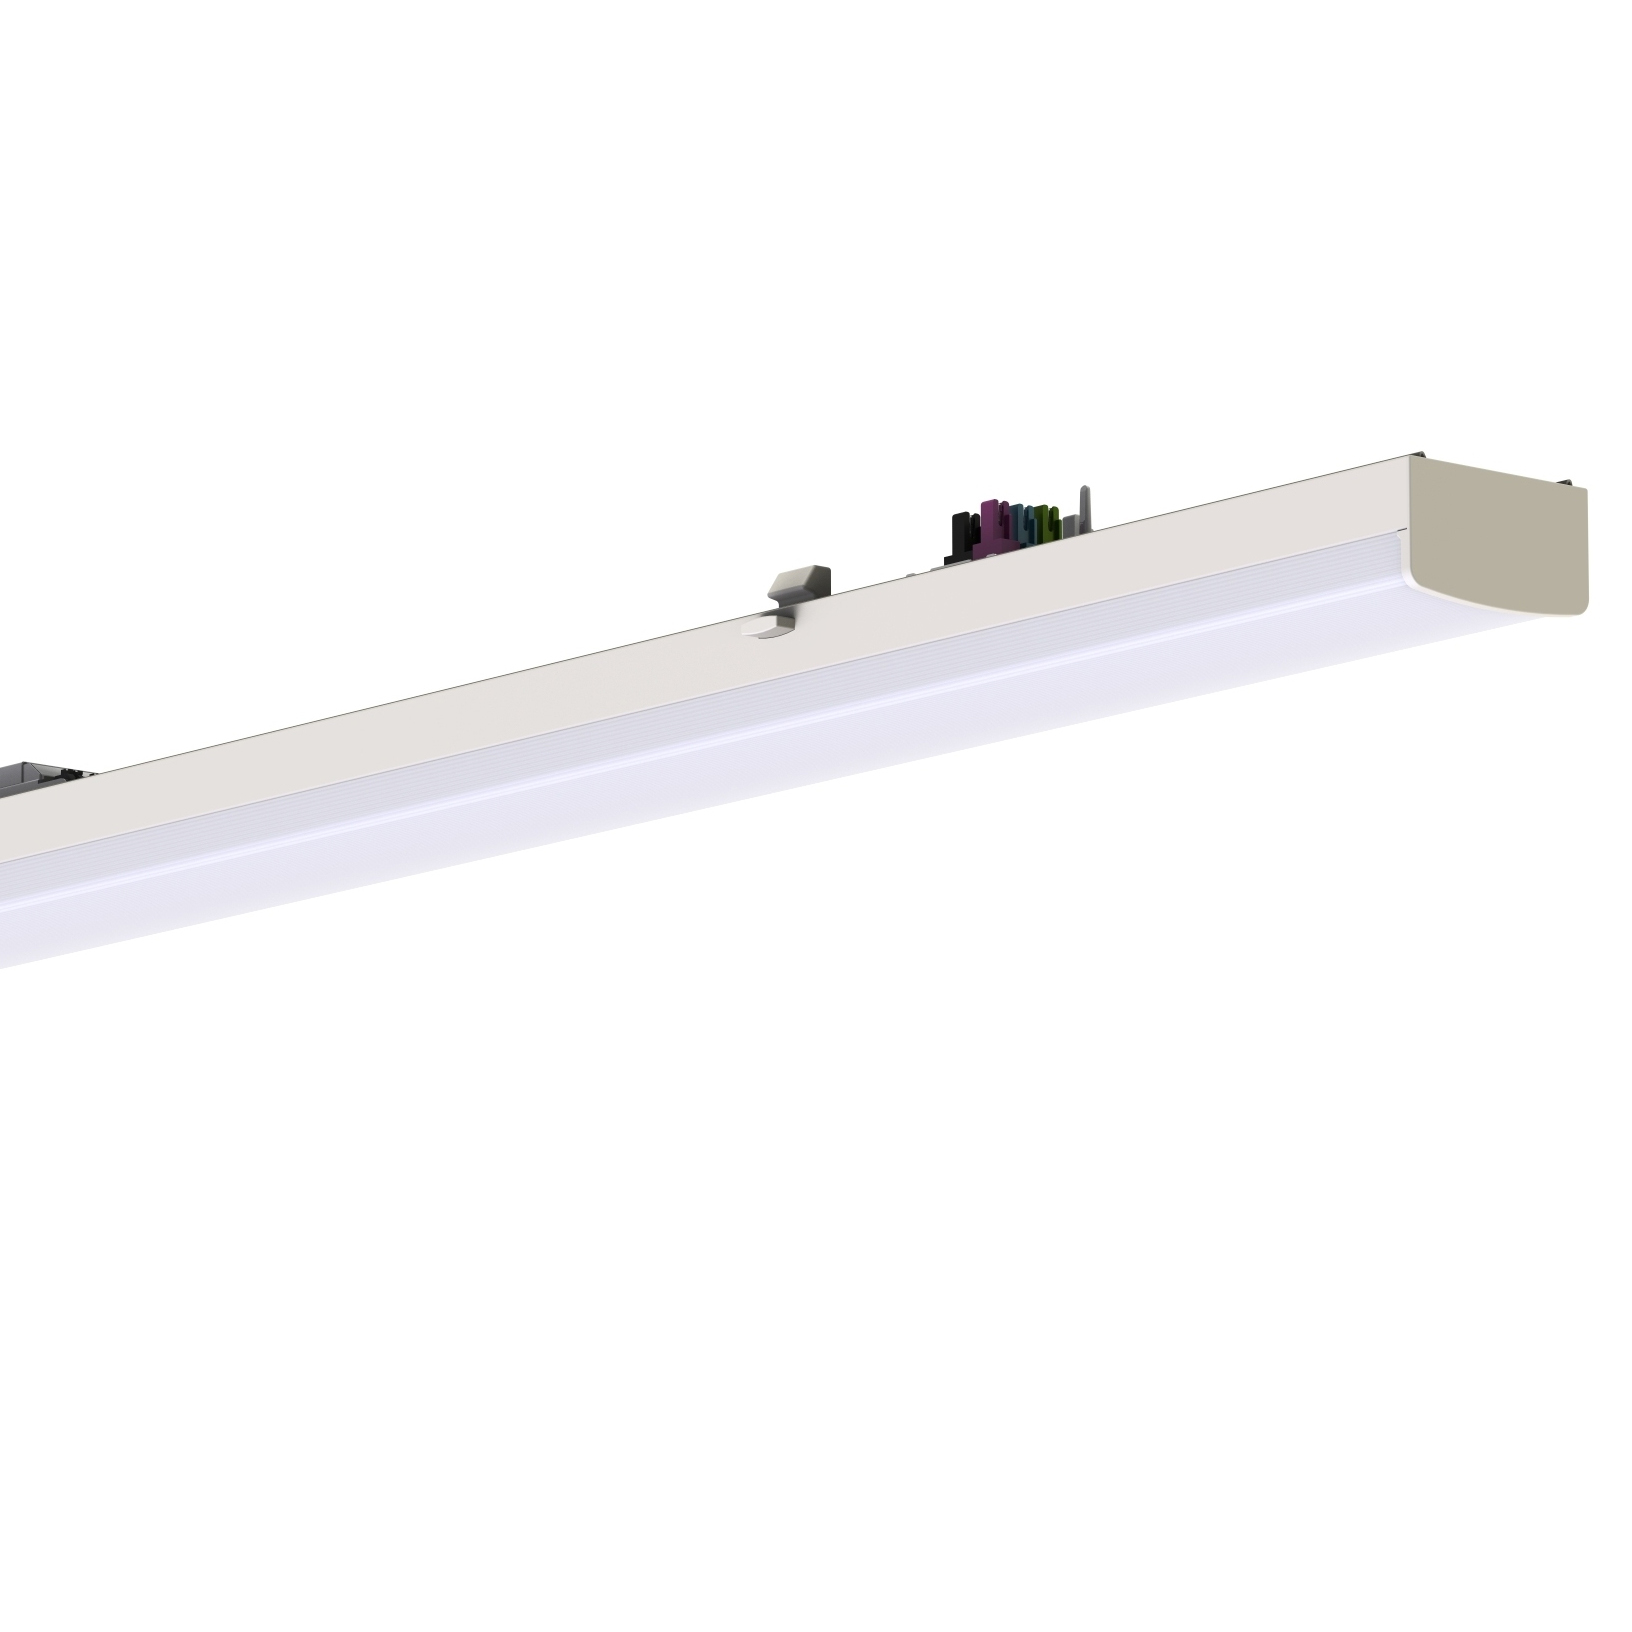 LED module diffuser